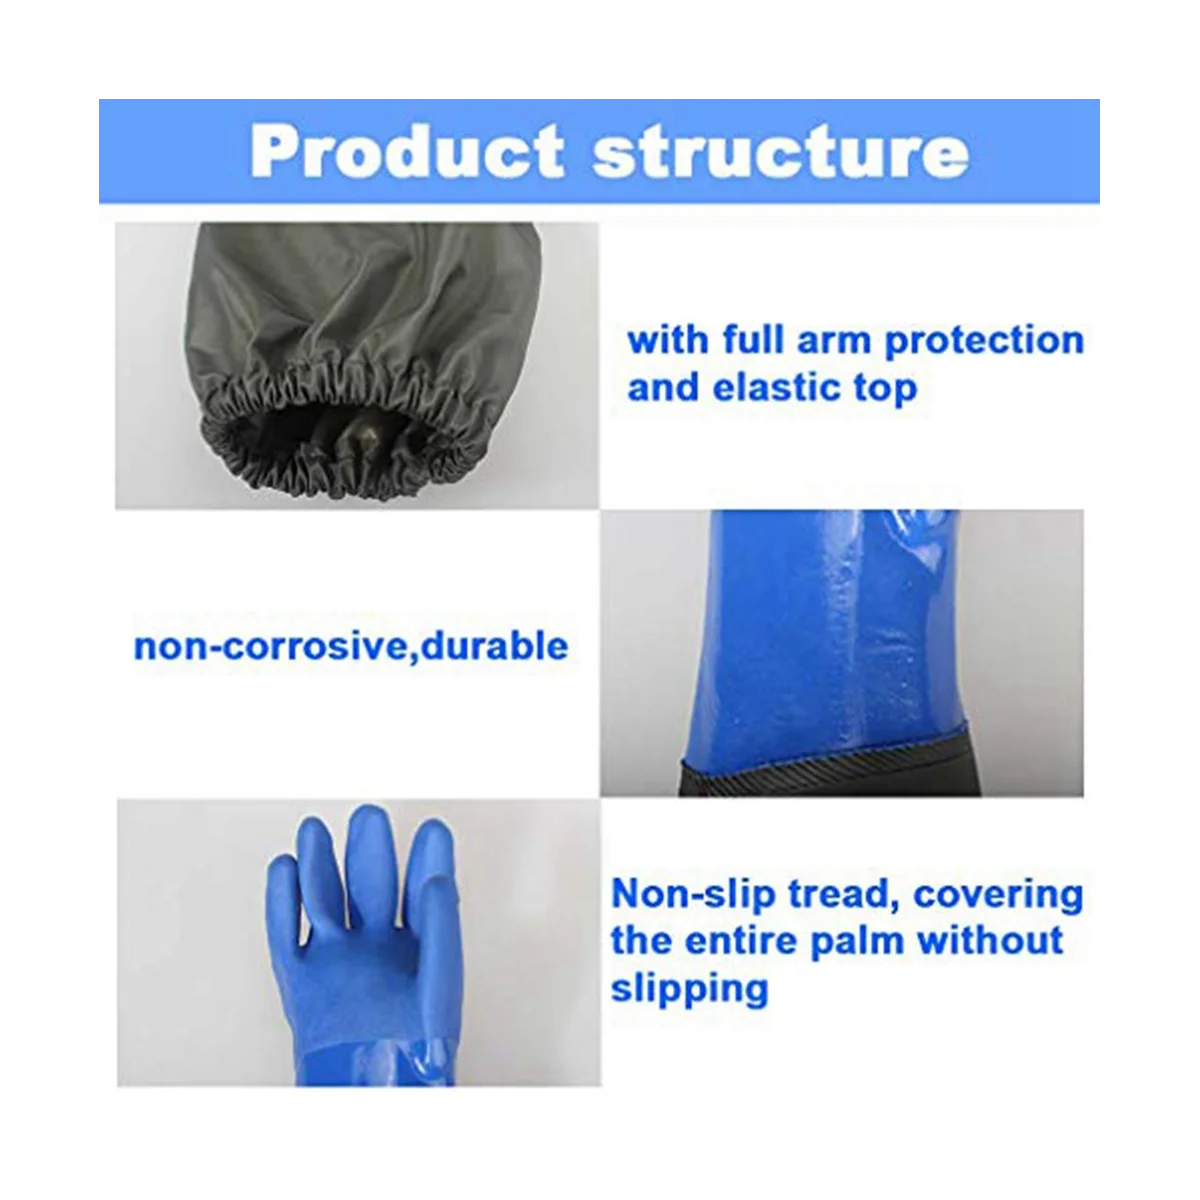 Длинные резиновые перчатки, длинные водонепроницаемые перчатки и сверхпрочные водонепроницаемые перчатки для работы с вредными веществами и кислотами Изображение 2 